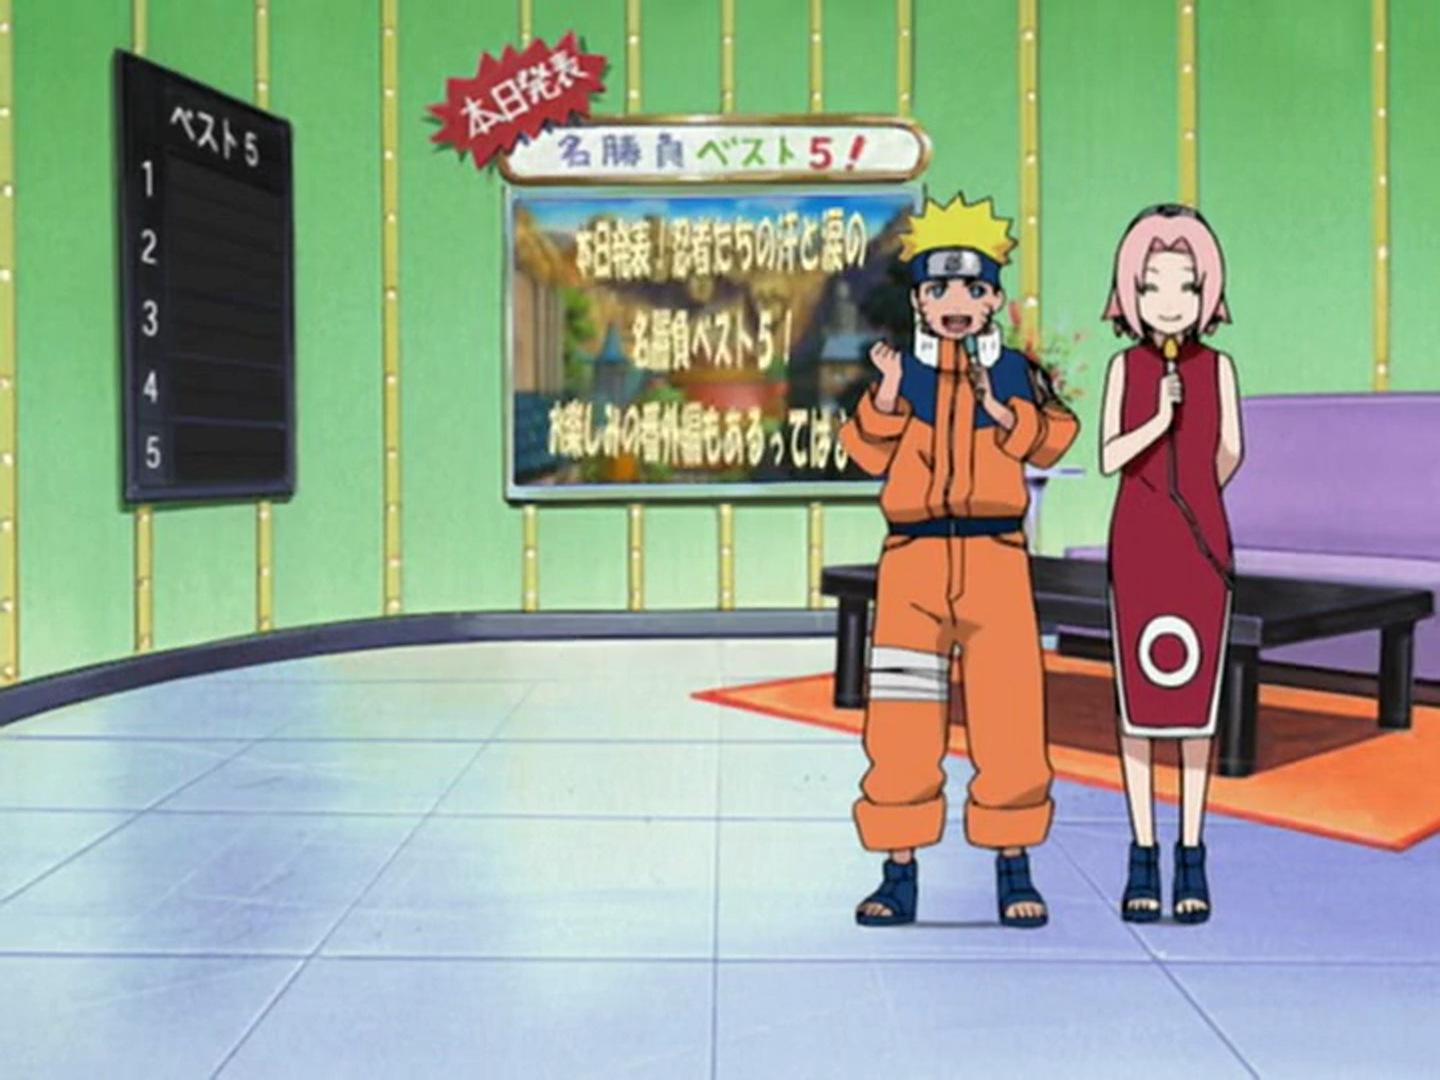 Relembrando o que aconteceu nos últimos episódios de Naruto